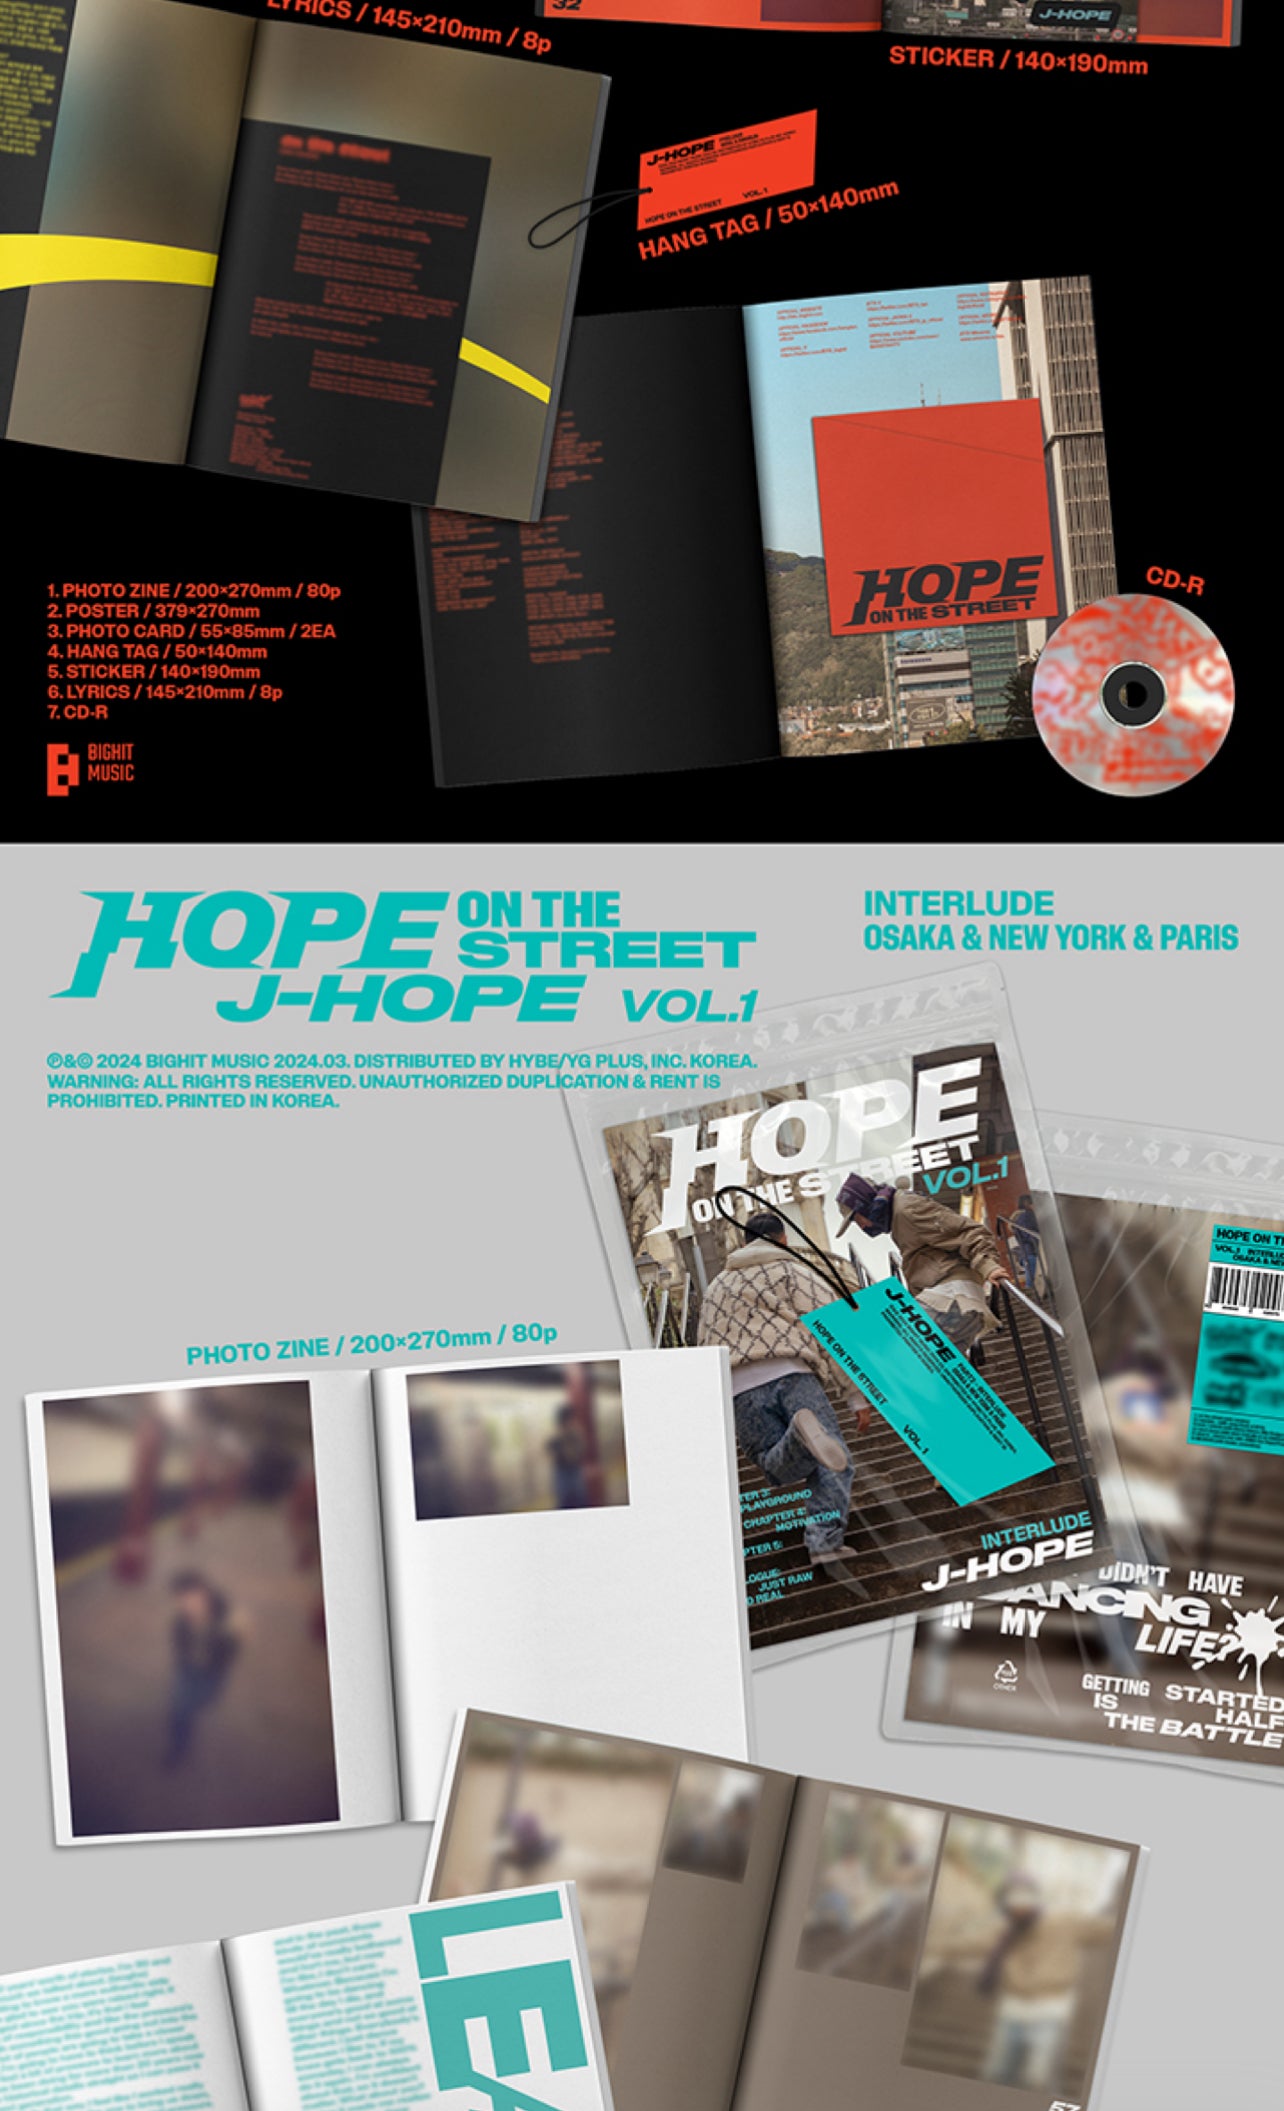 j-hope HOPE ON THE STREET VOL.1 WEVERSE GIFT – HARU